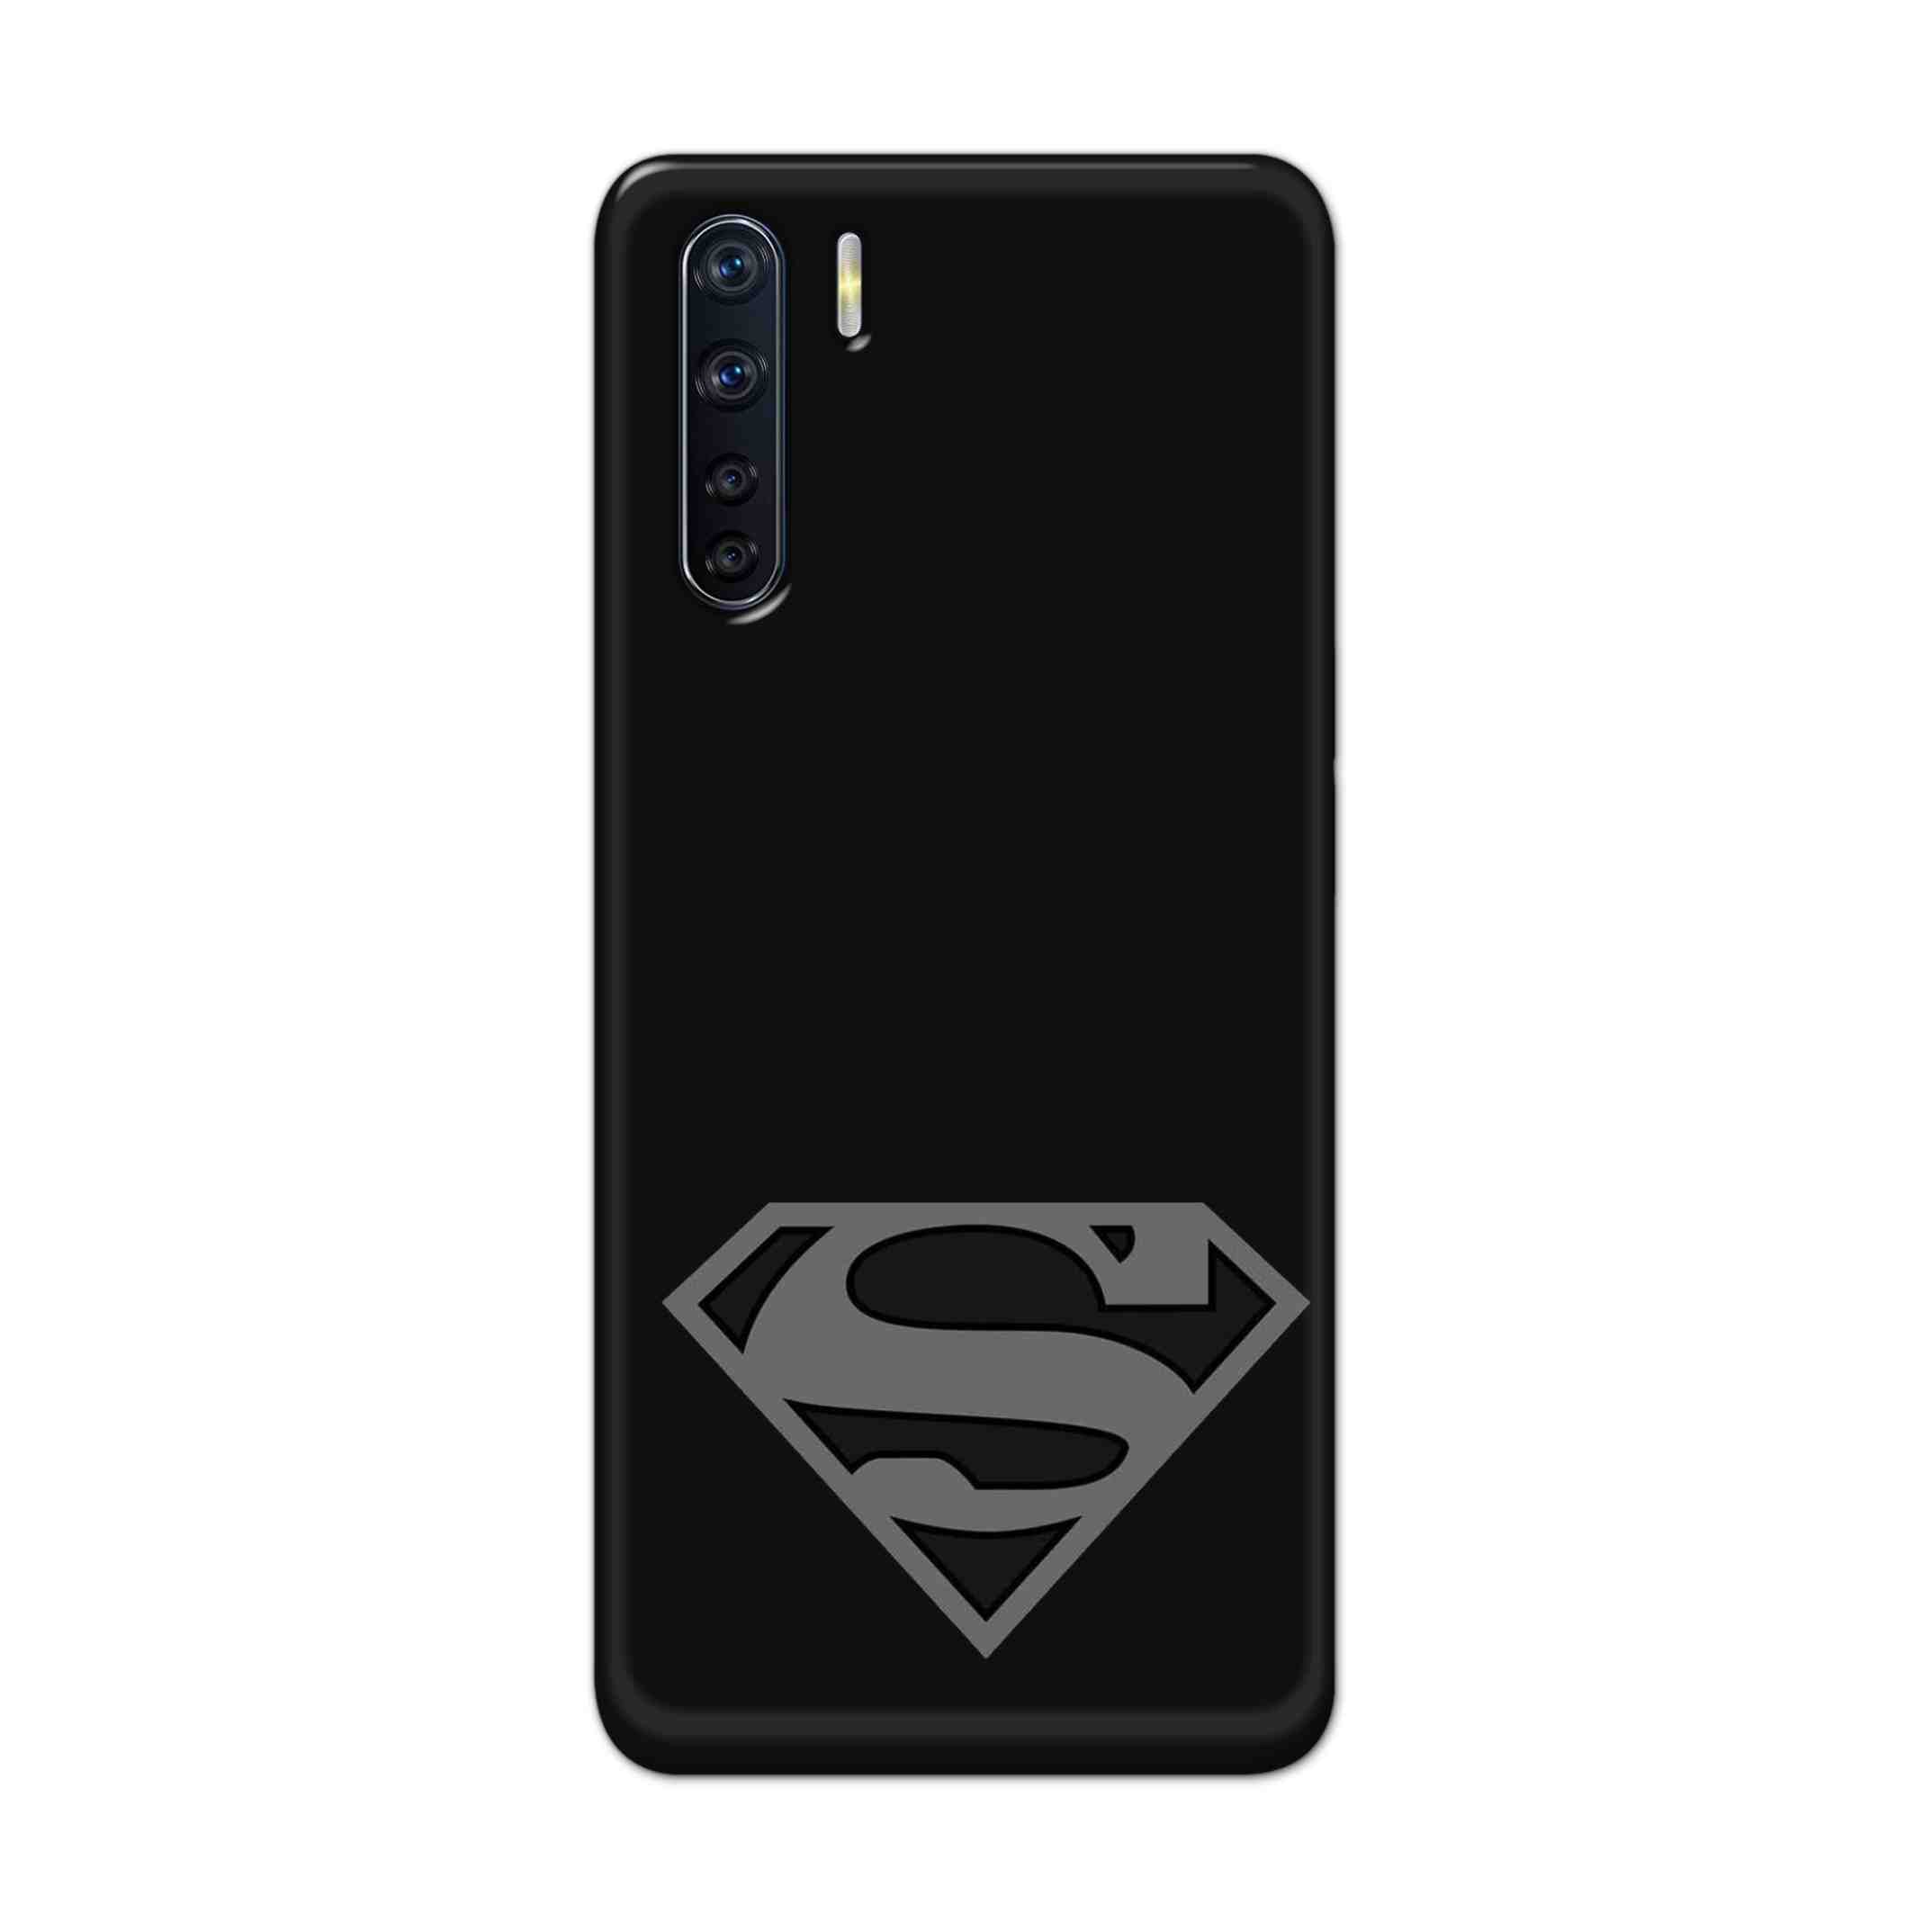 Buy Superman Logo Hard Back Mobile Phone Case Cover For OPPO F15 Online